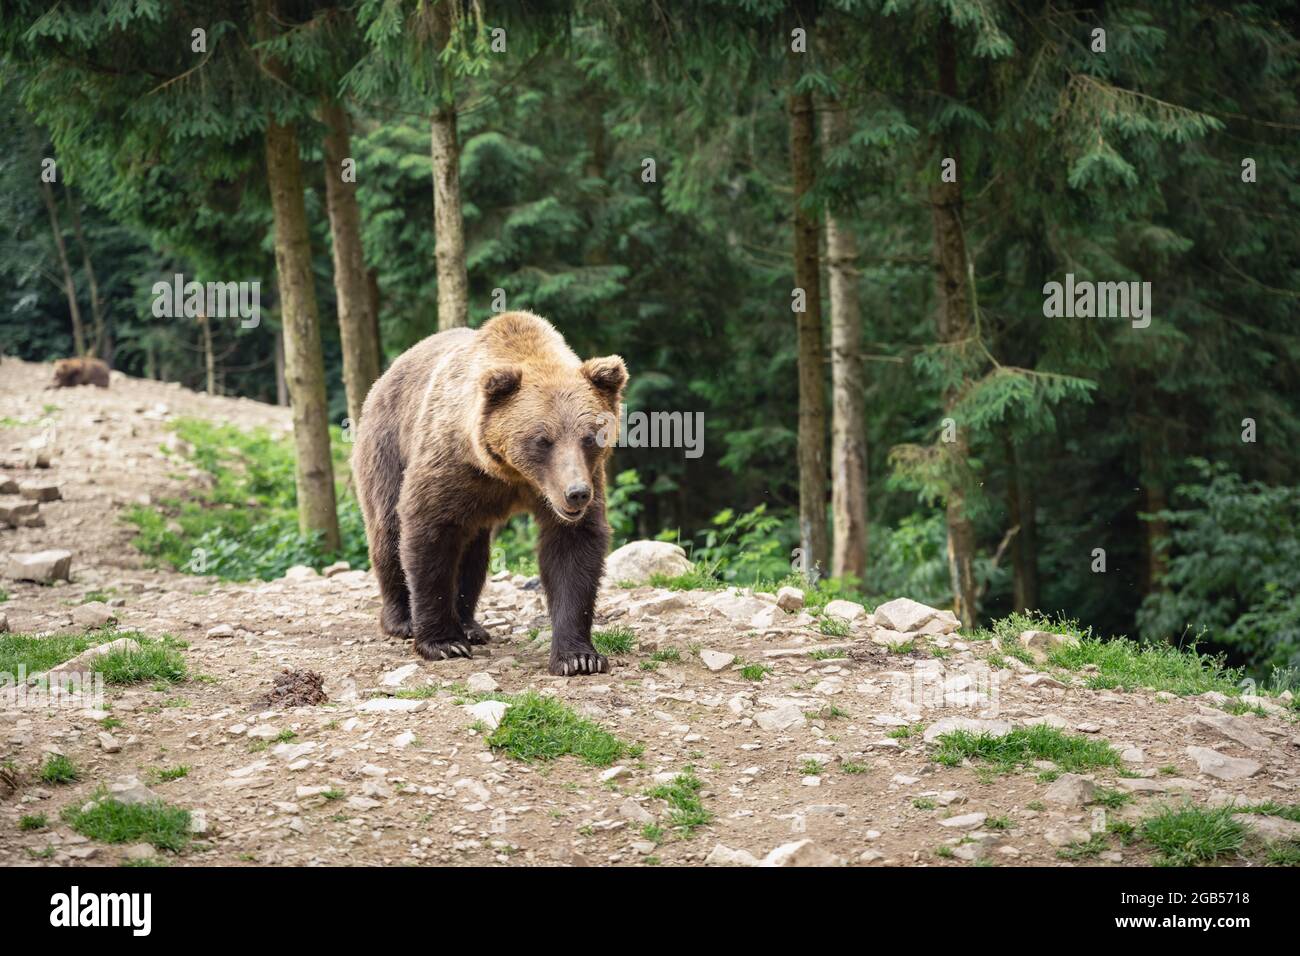 Orso bruno selvaggio che cammina nella foresta. Fotografia animale Foto Stock